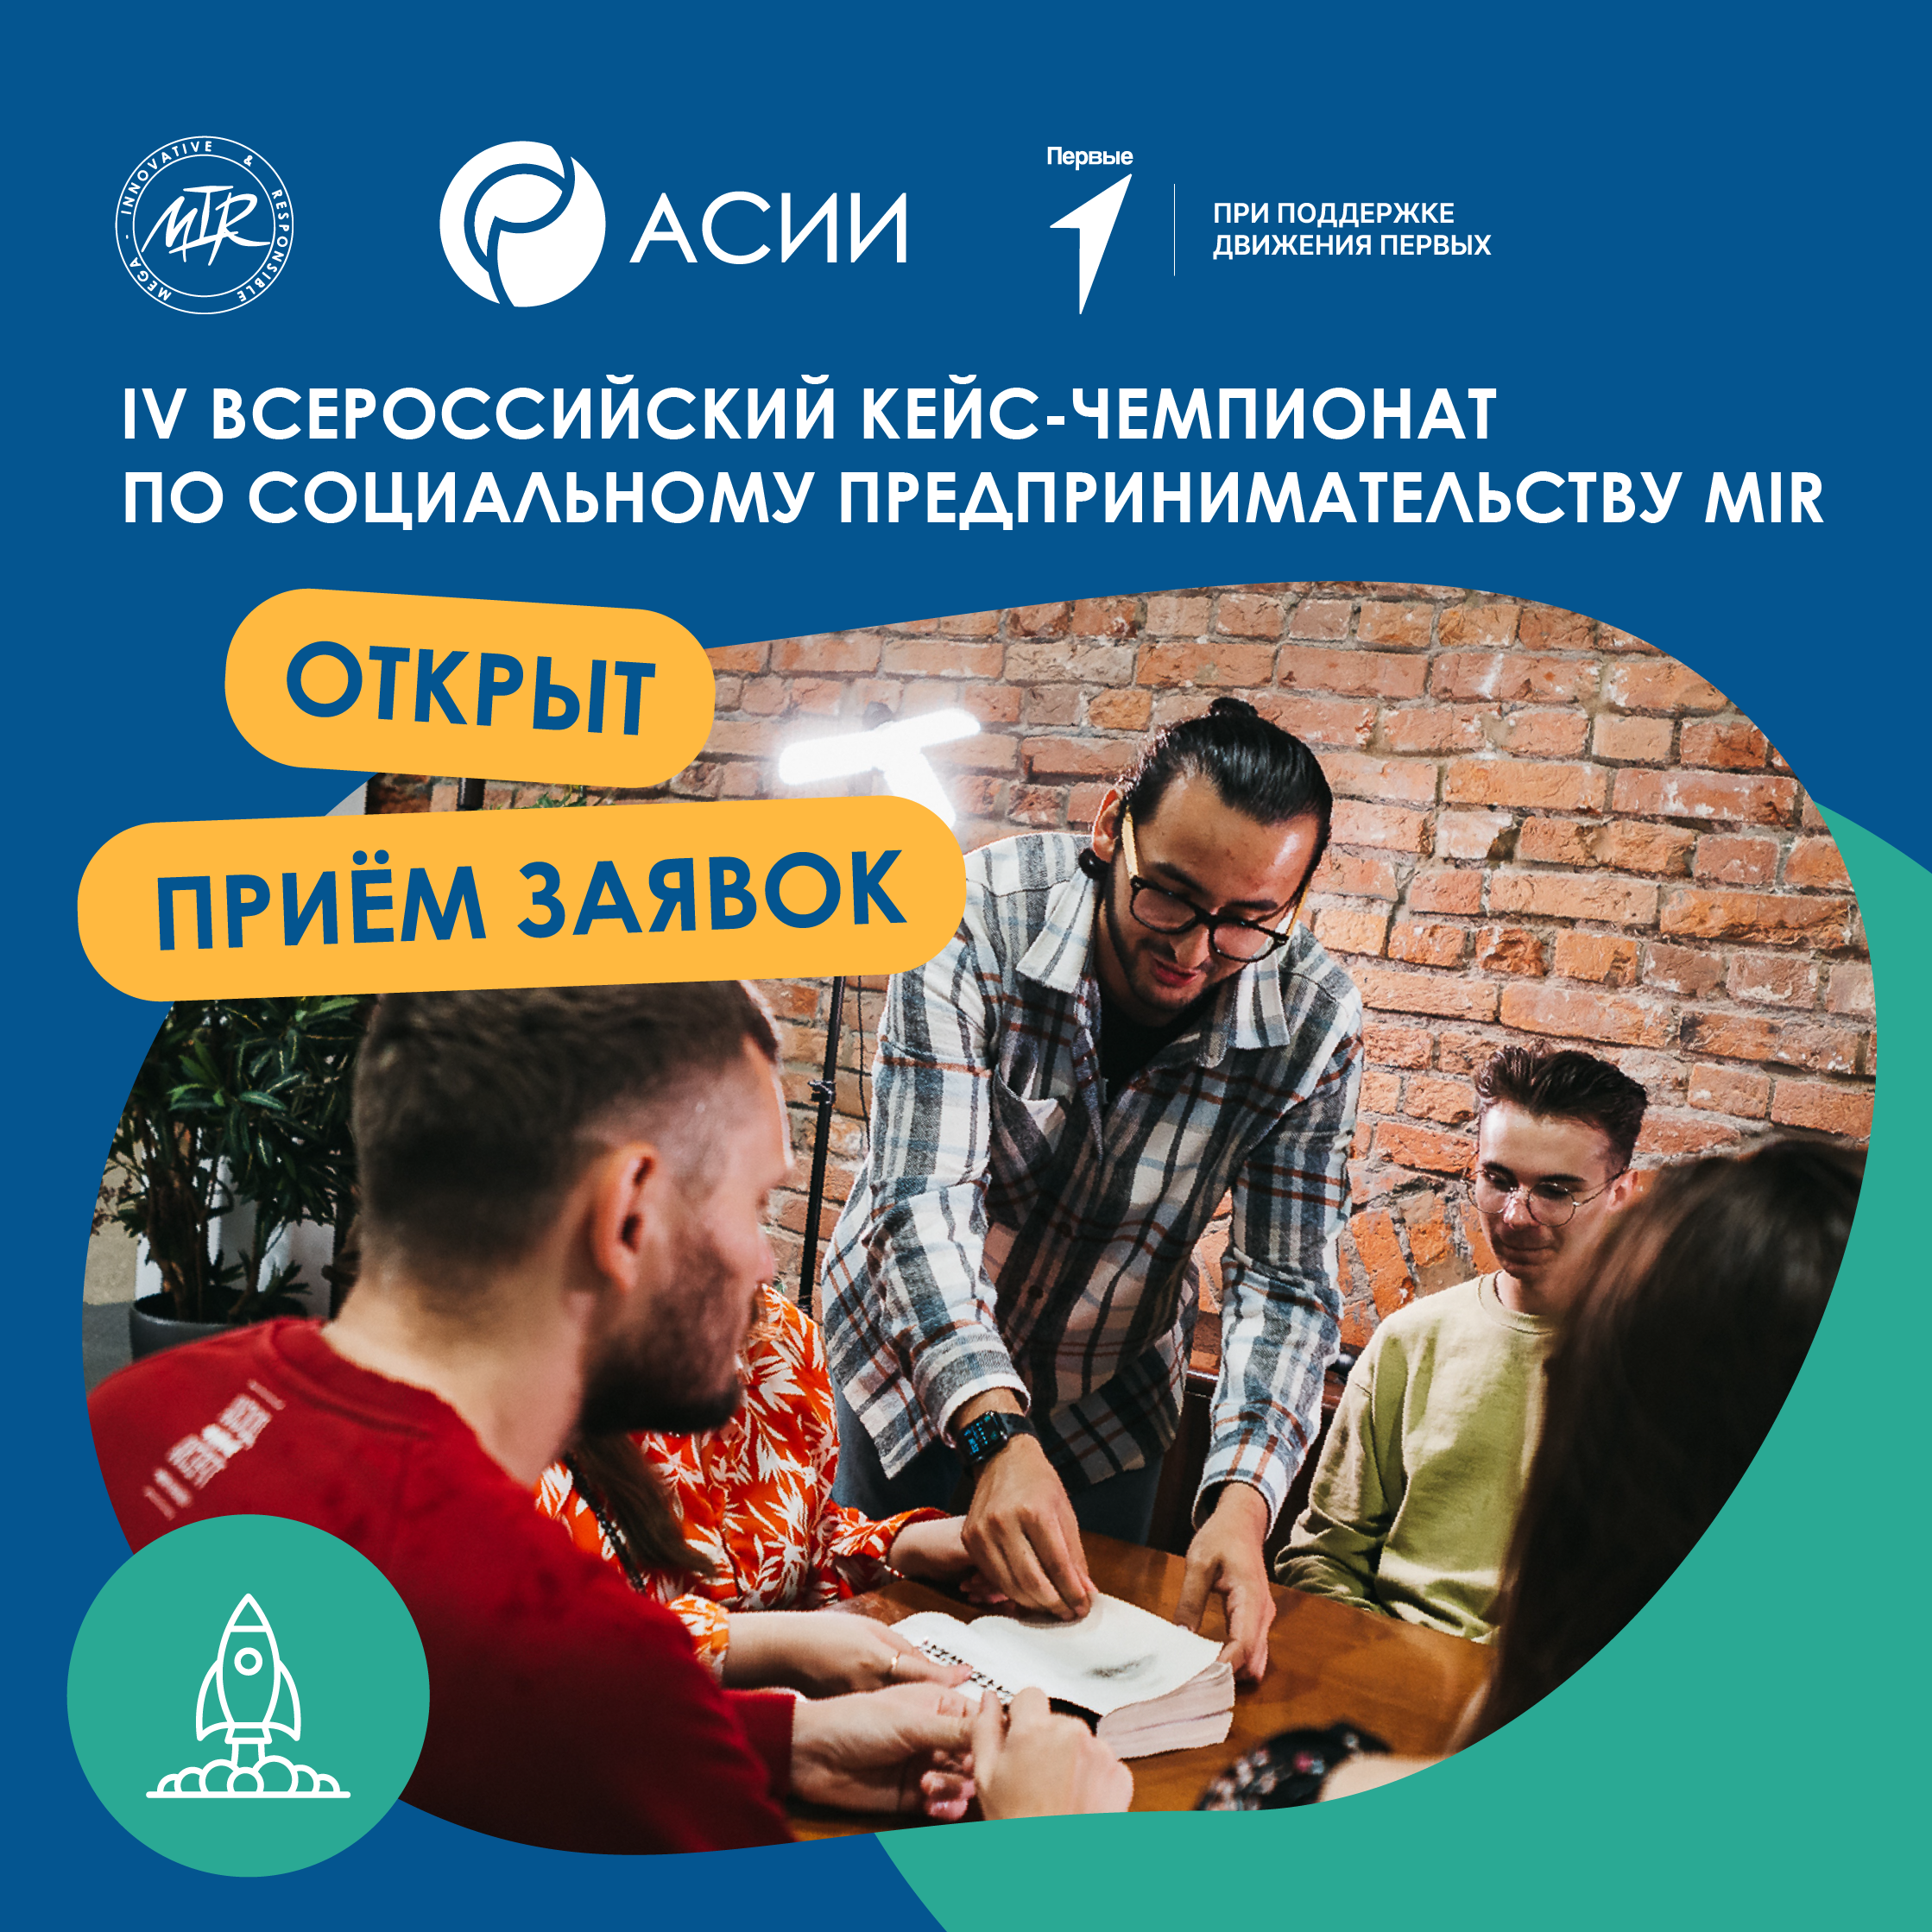 Всероссийский кейс-чемпионат по социальному предпринимательству MIR.